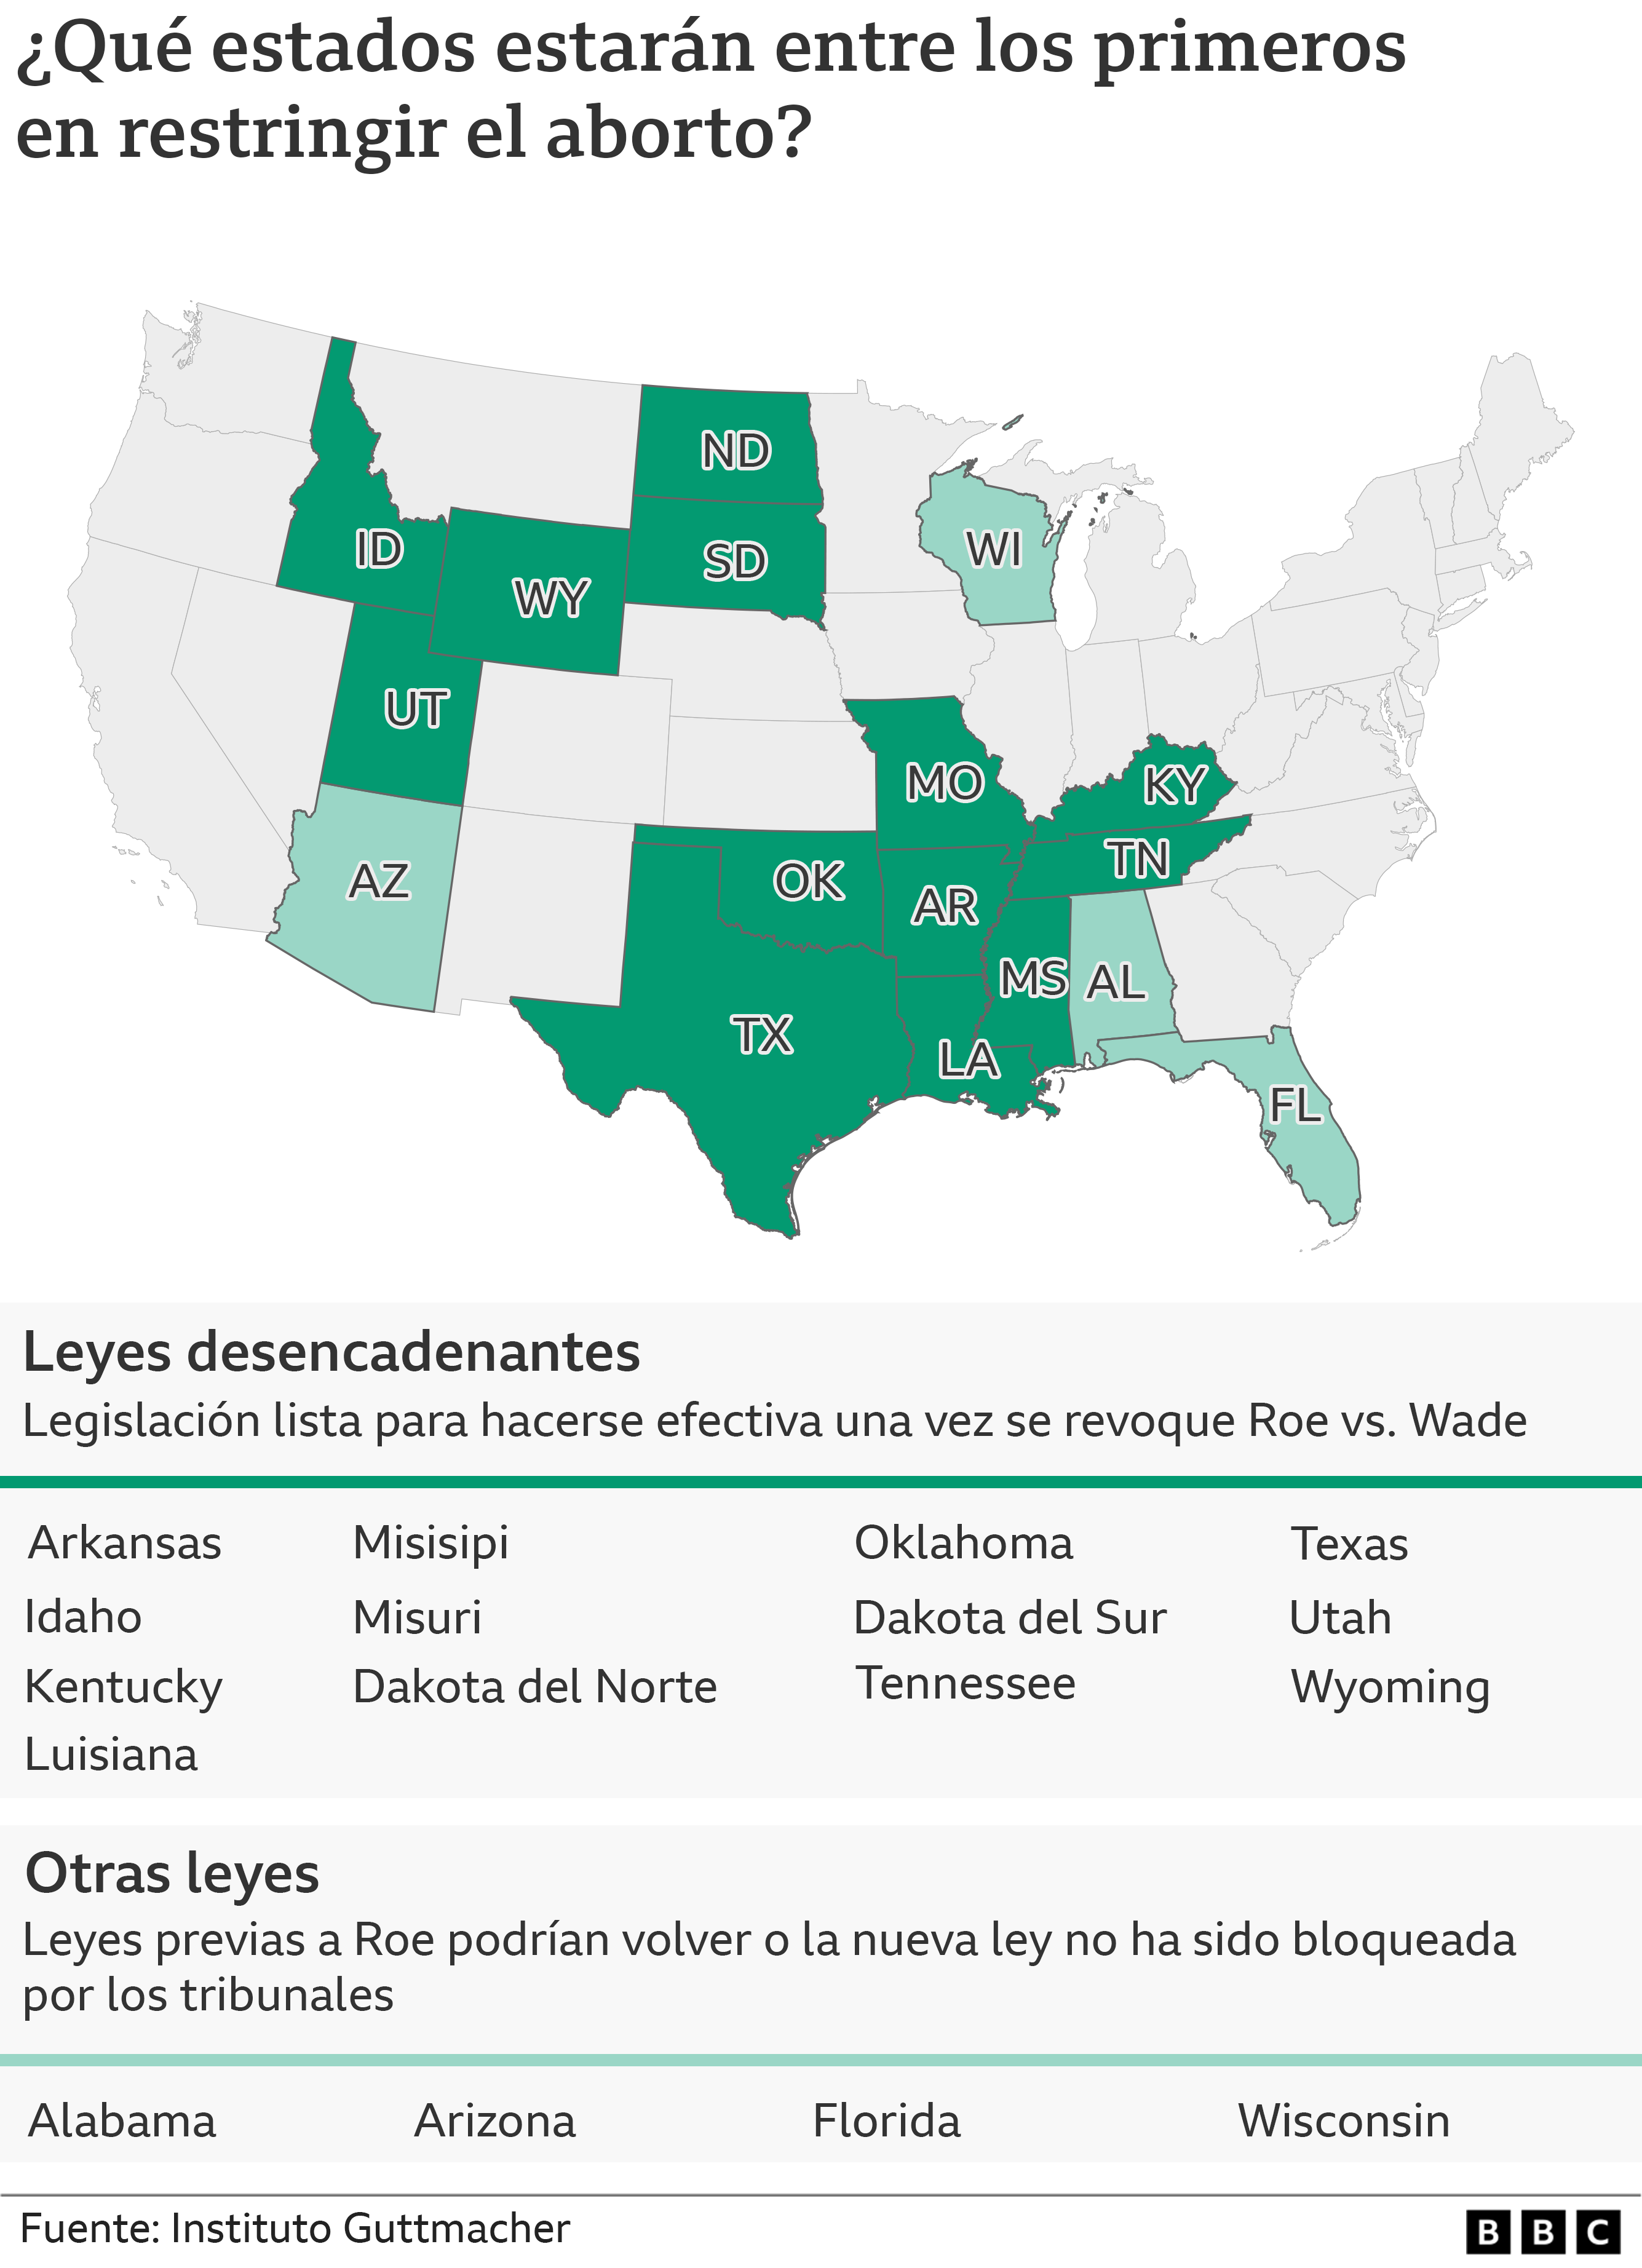 Mapa estados Estados Unidos con leyes gatillo, de activación o desencadenantes para restringir el aborto.